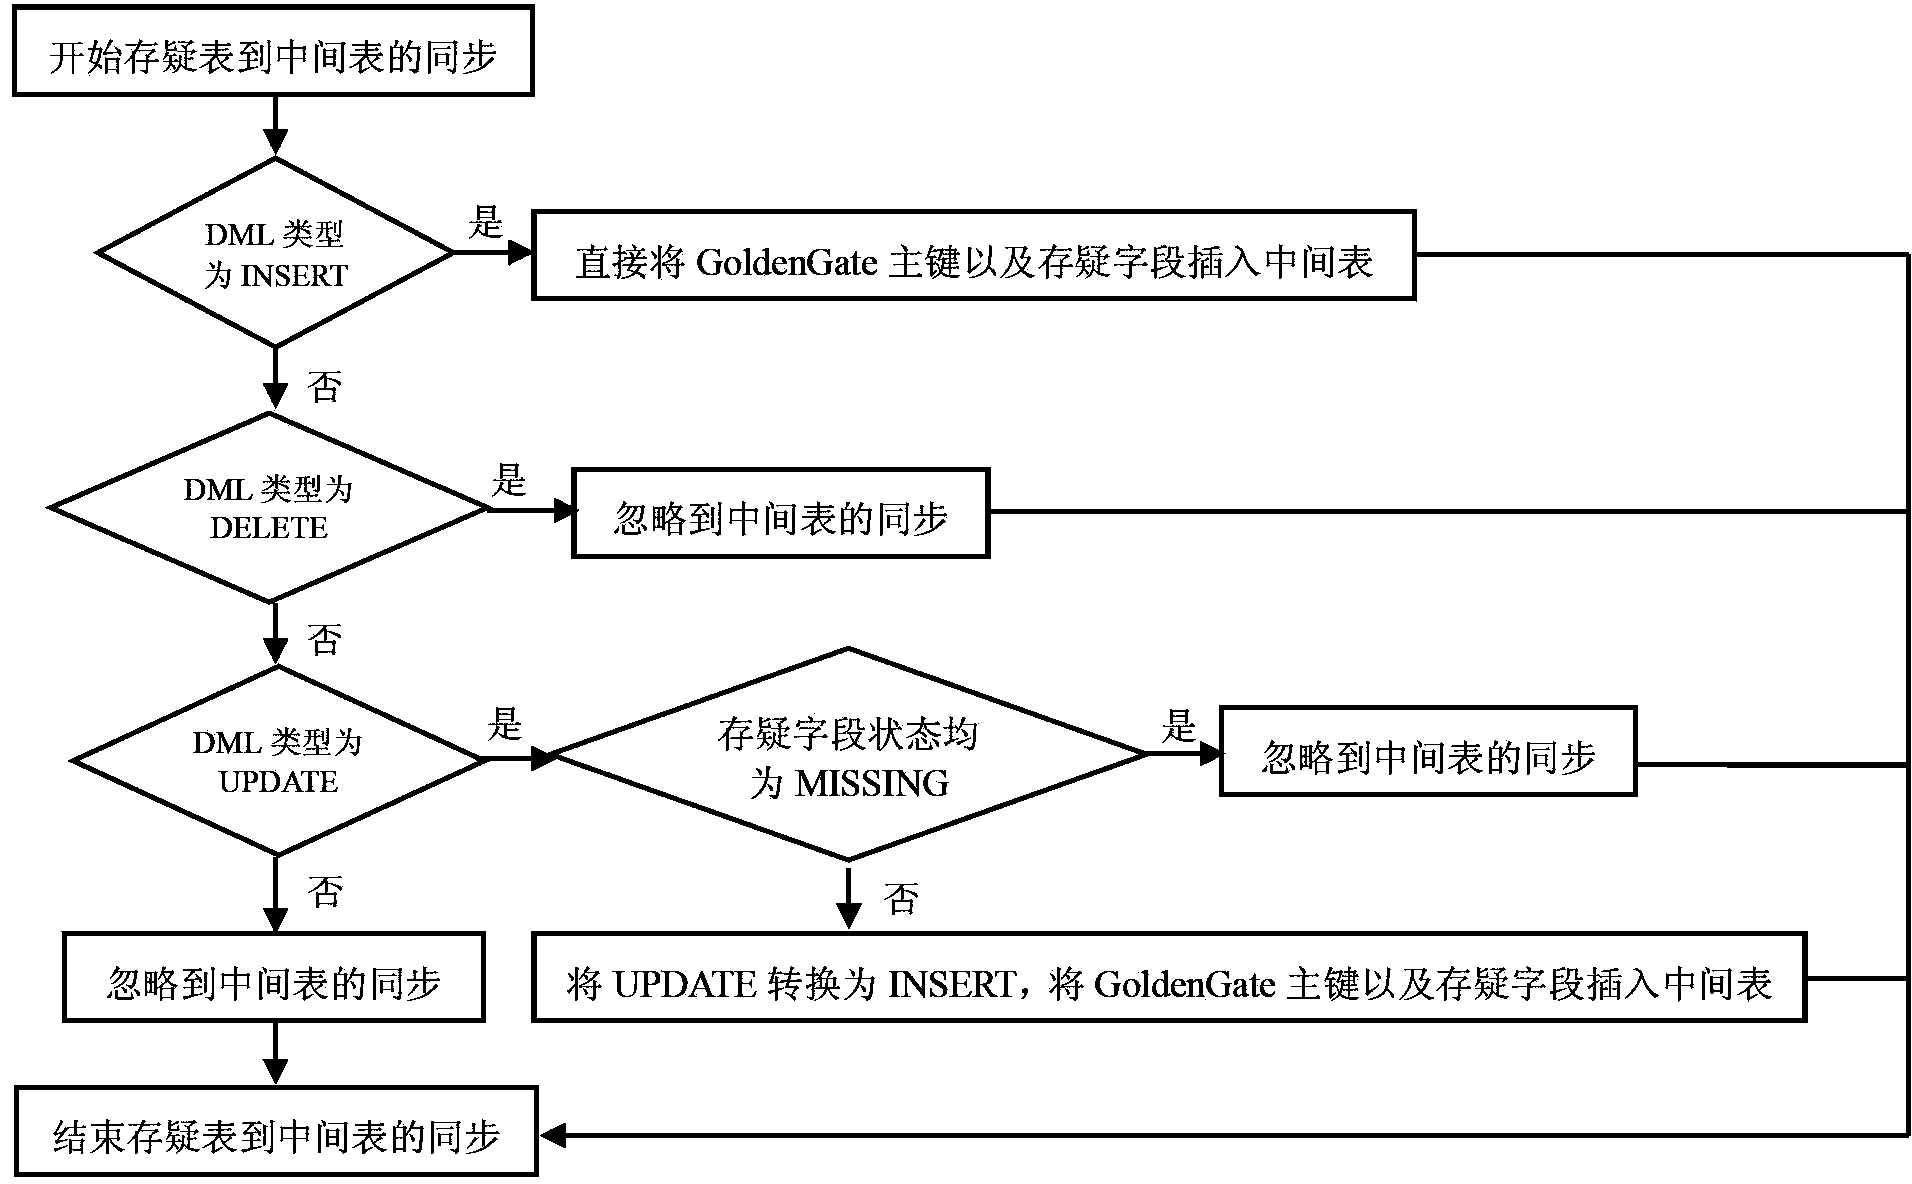 Log based structured data synchronization method